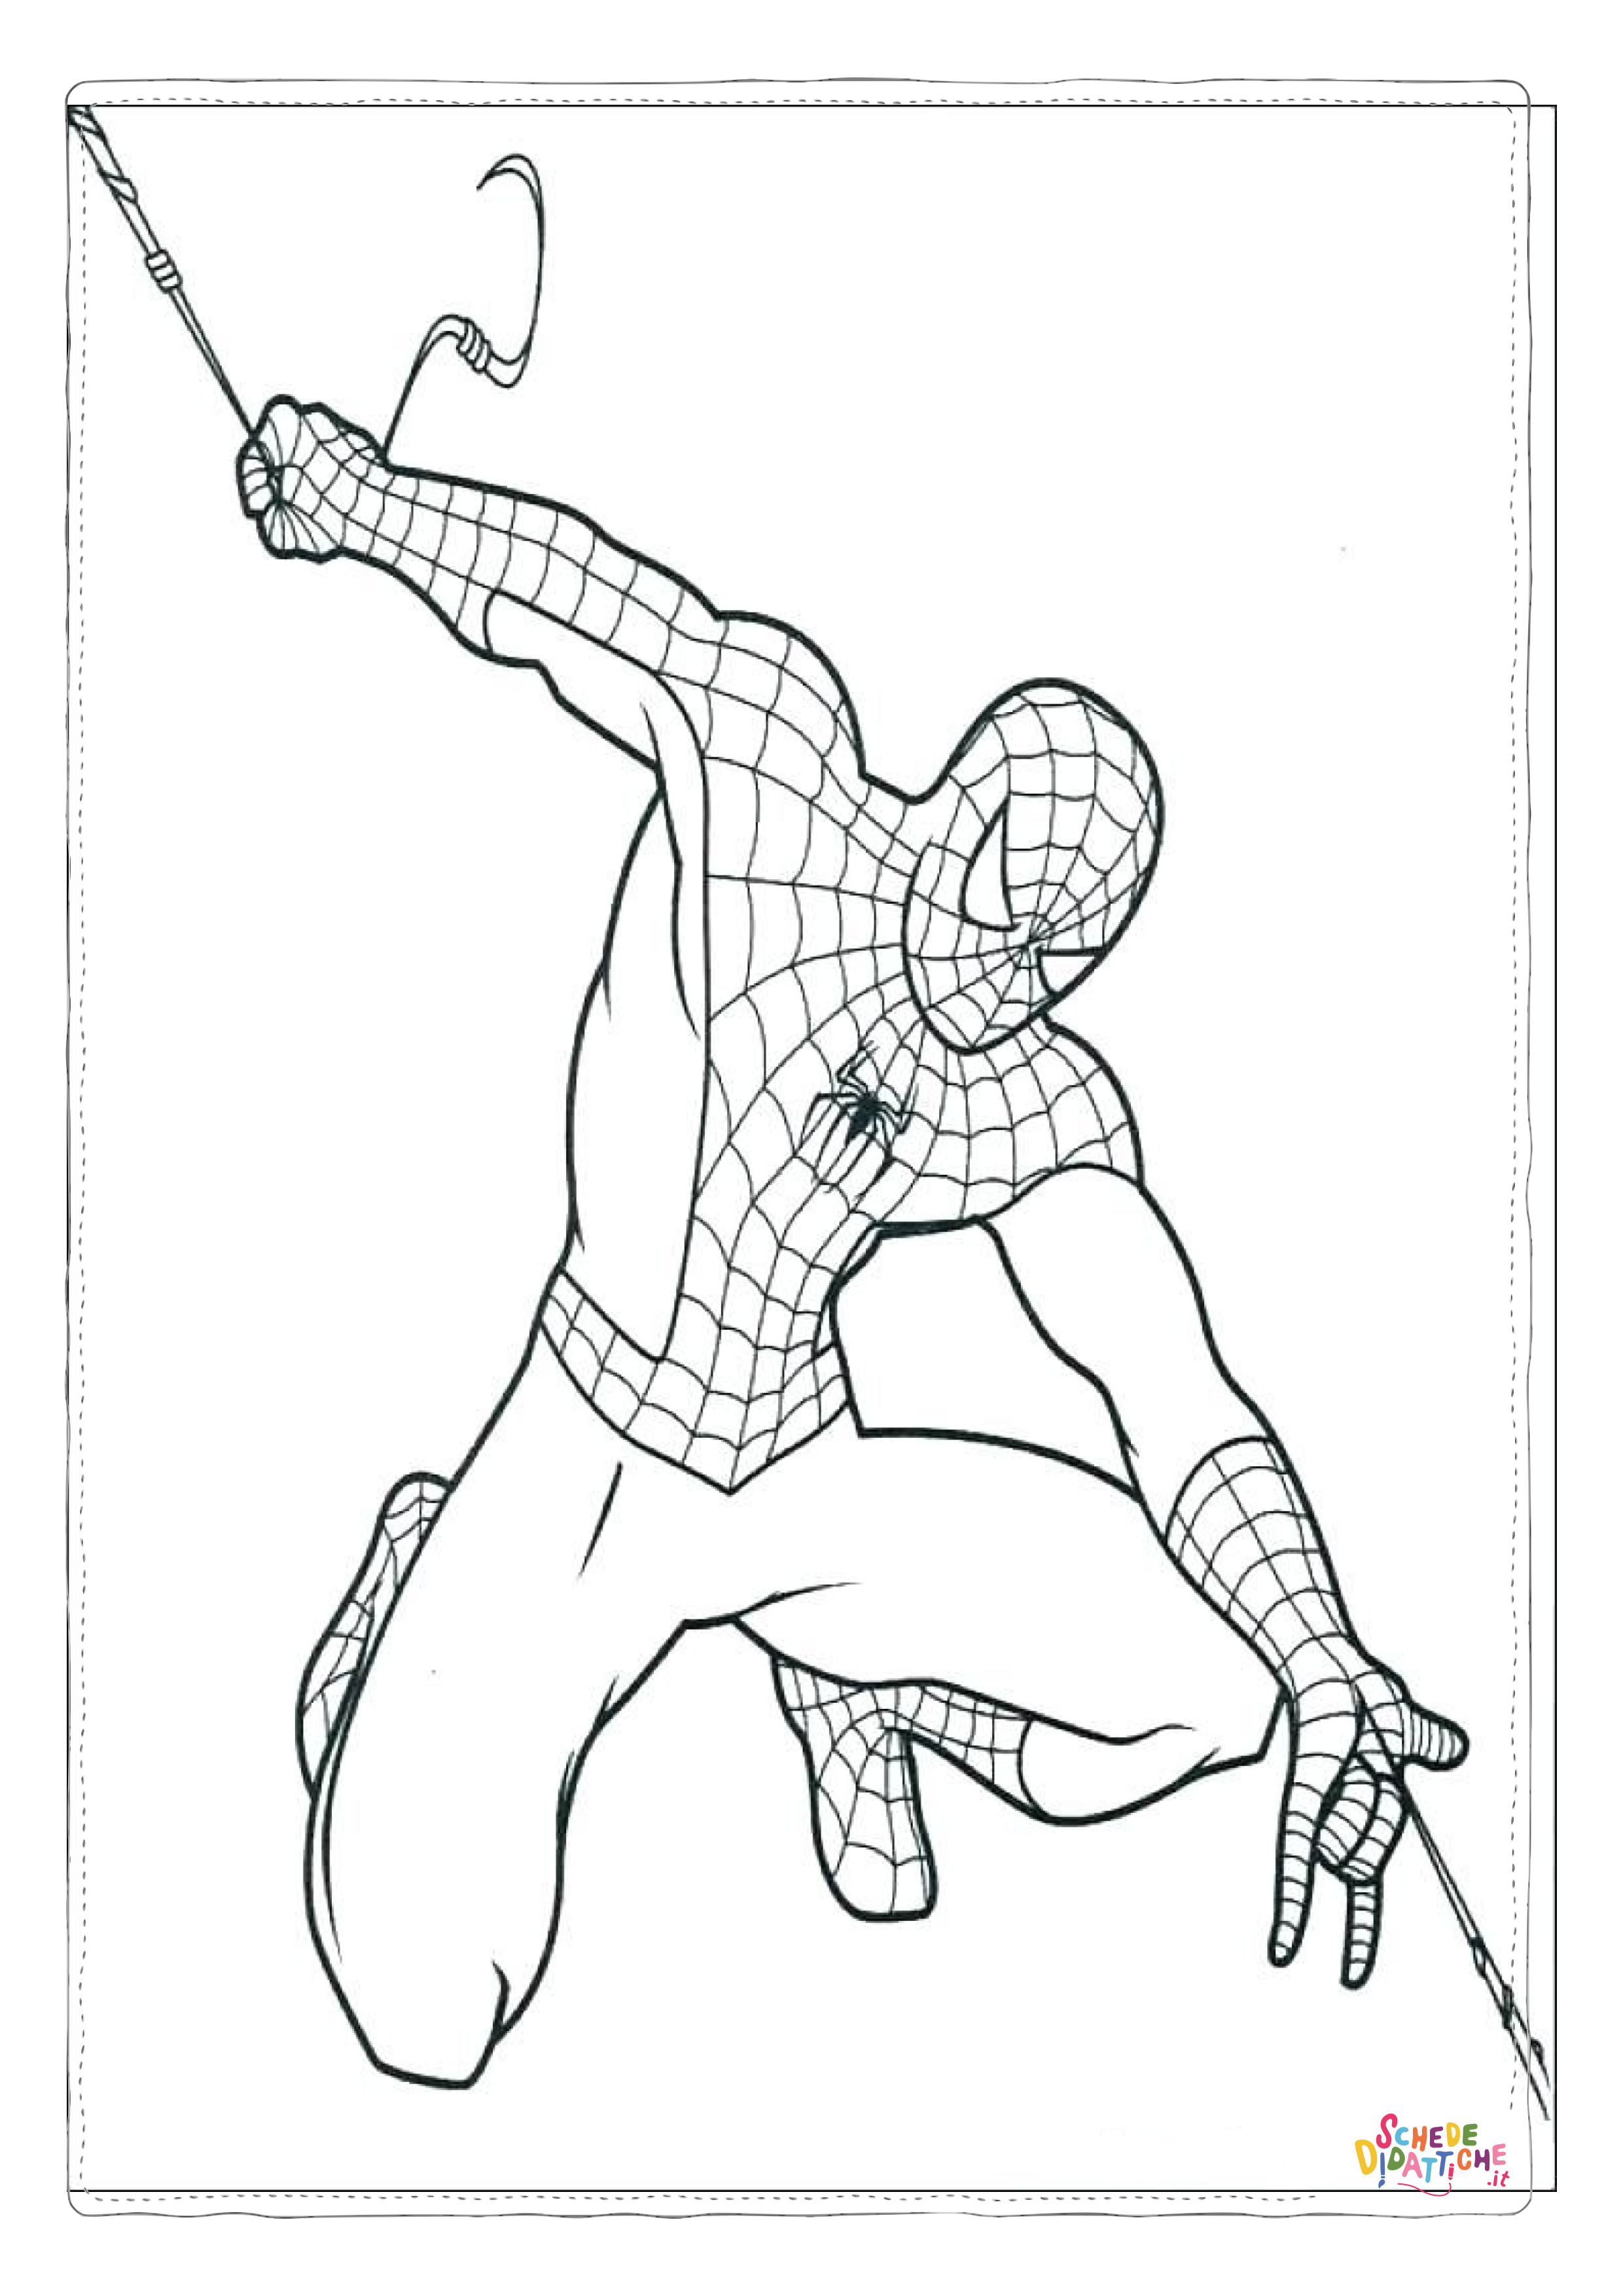 Disegno di Spiderman da stampare e colorare 136